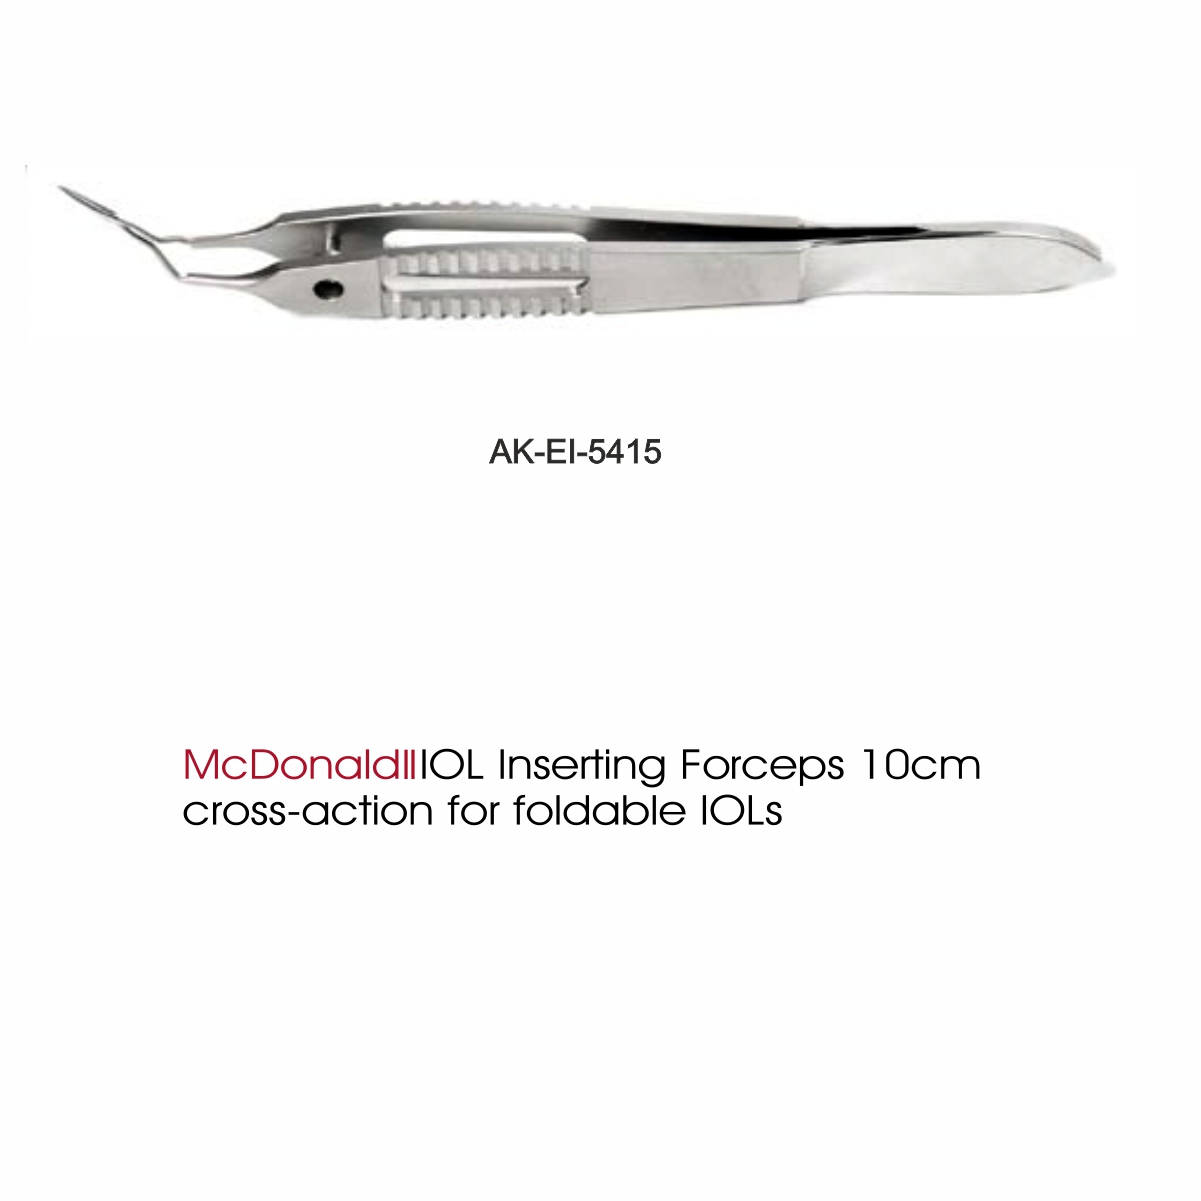 McDonald II IOL Inserting Forceps